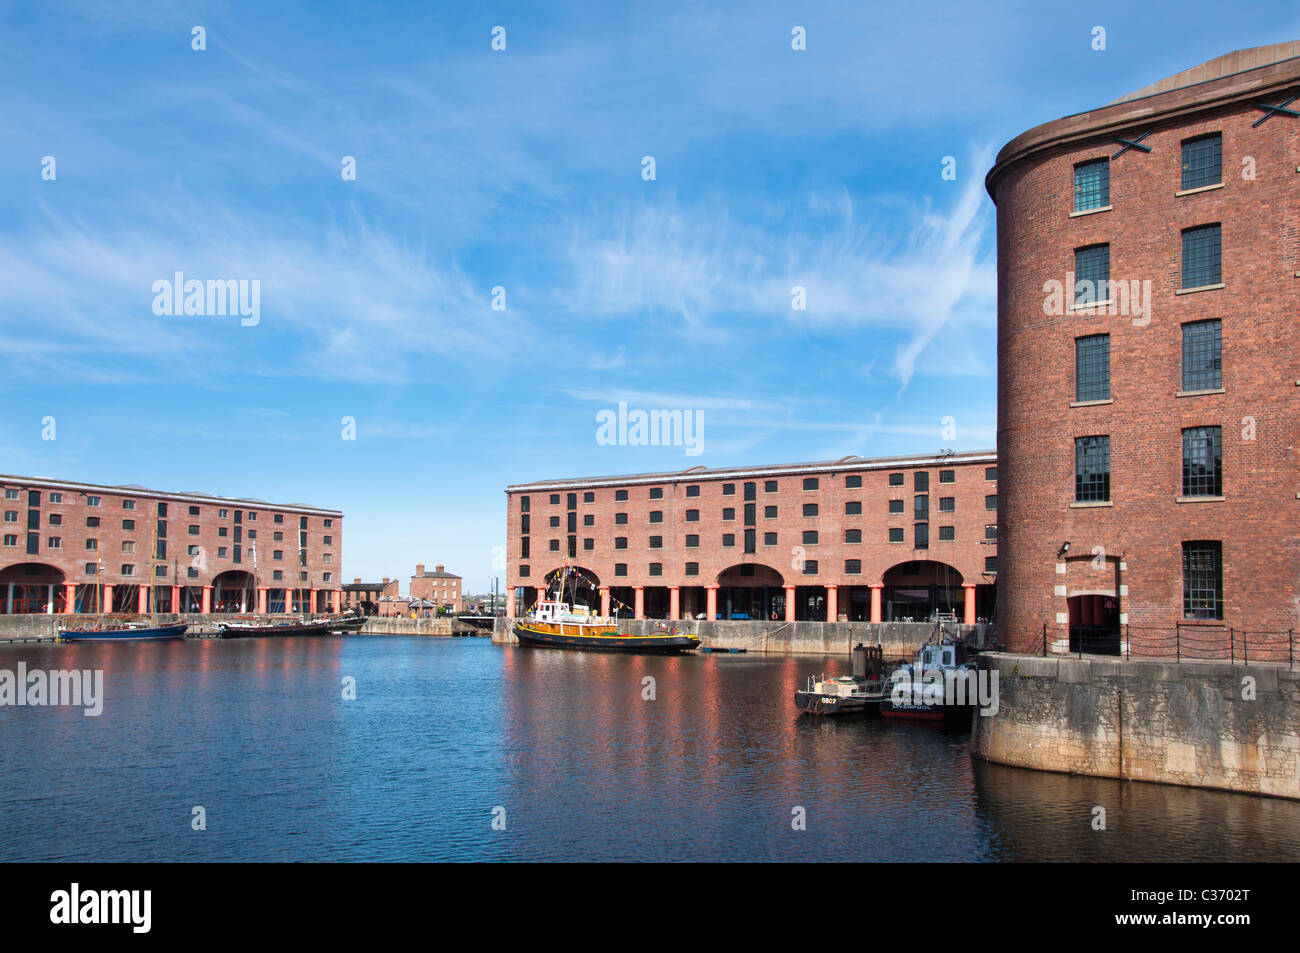 Albert Dock in Liverpool, England. Stock Photo